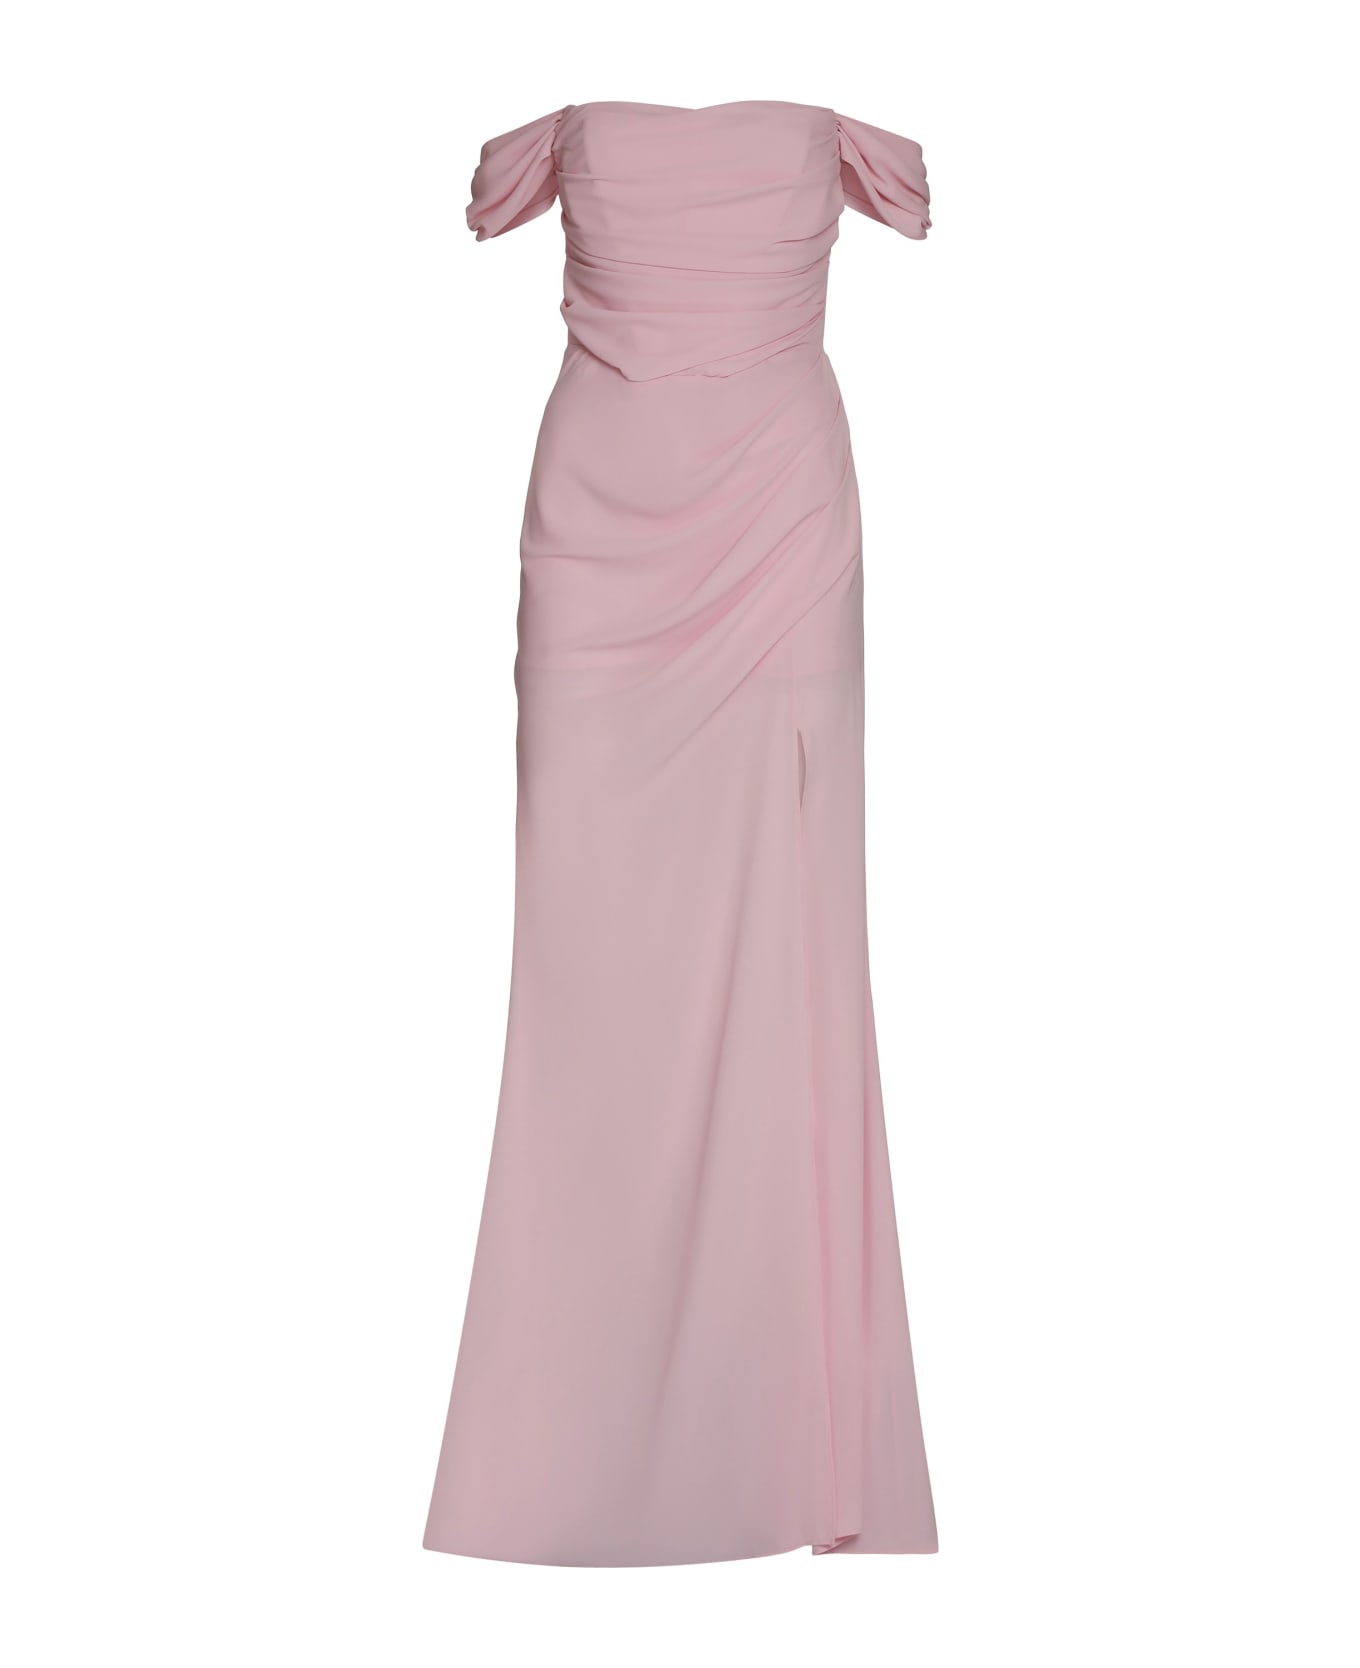 Giuseppe di Morabito Crepe Dress - Pink